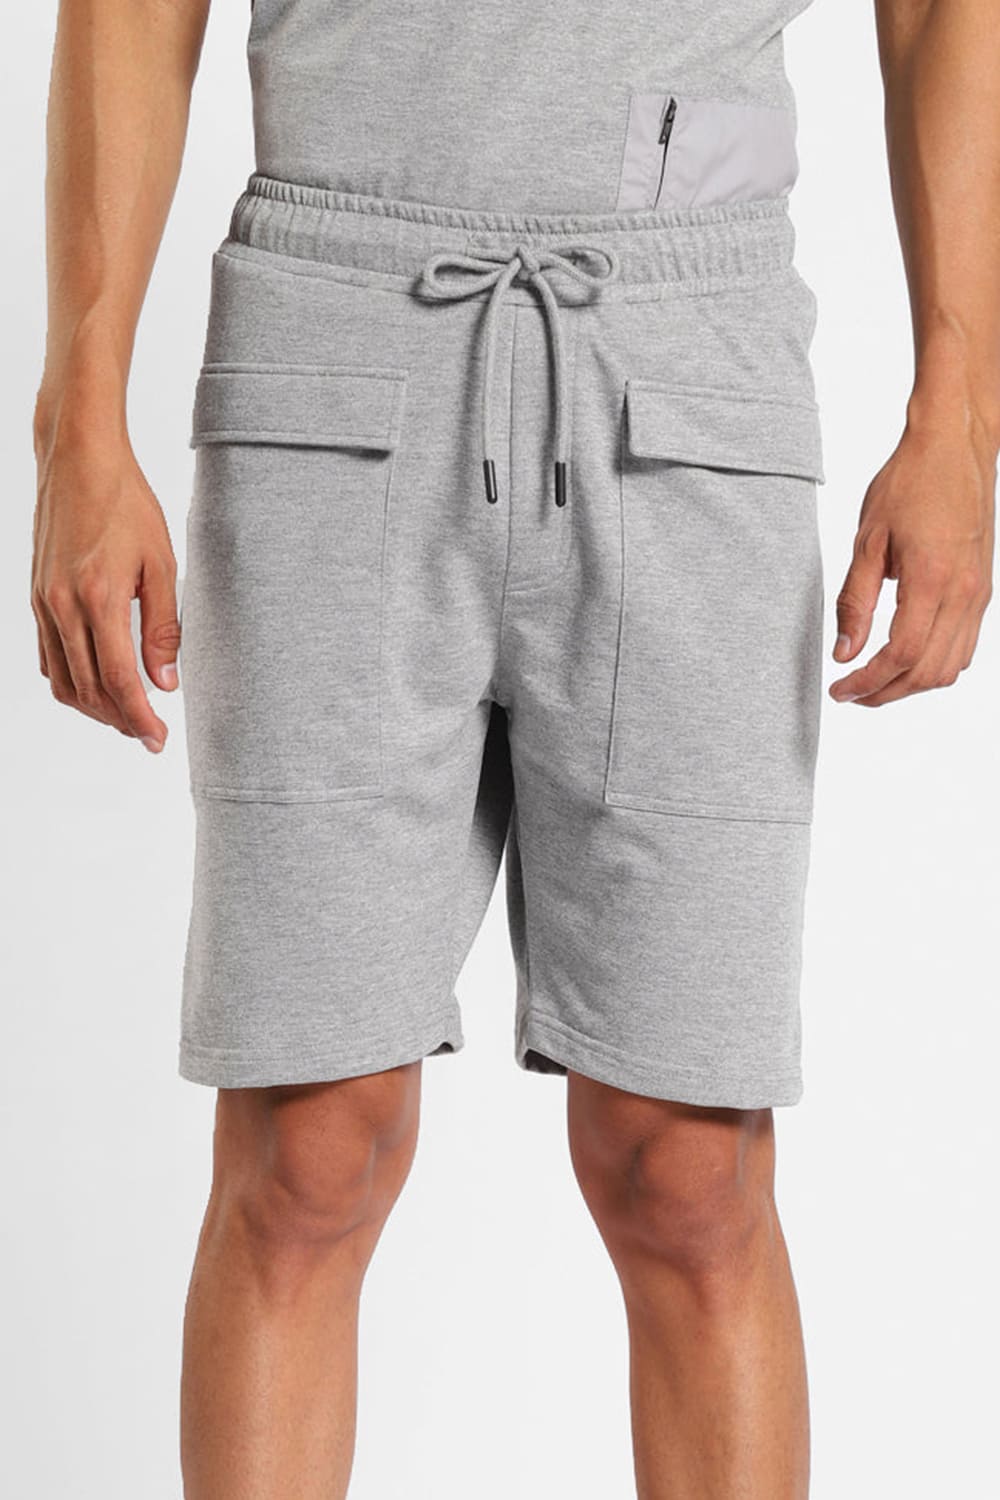 Hermes Utility Shorts – Nobero